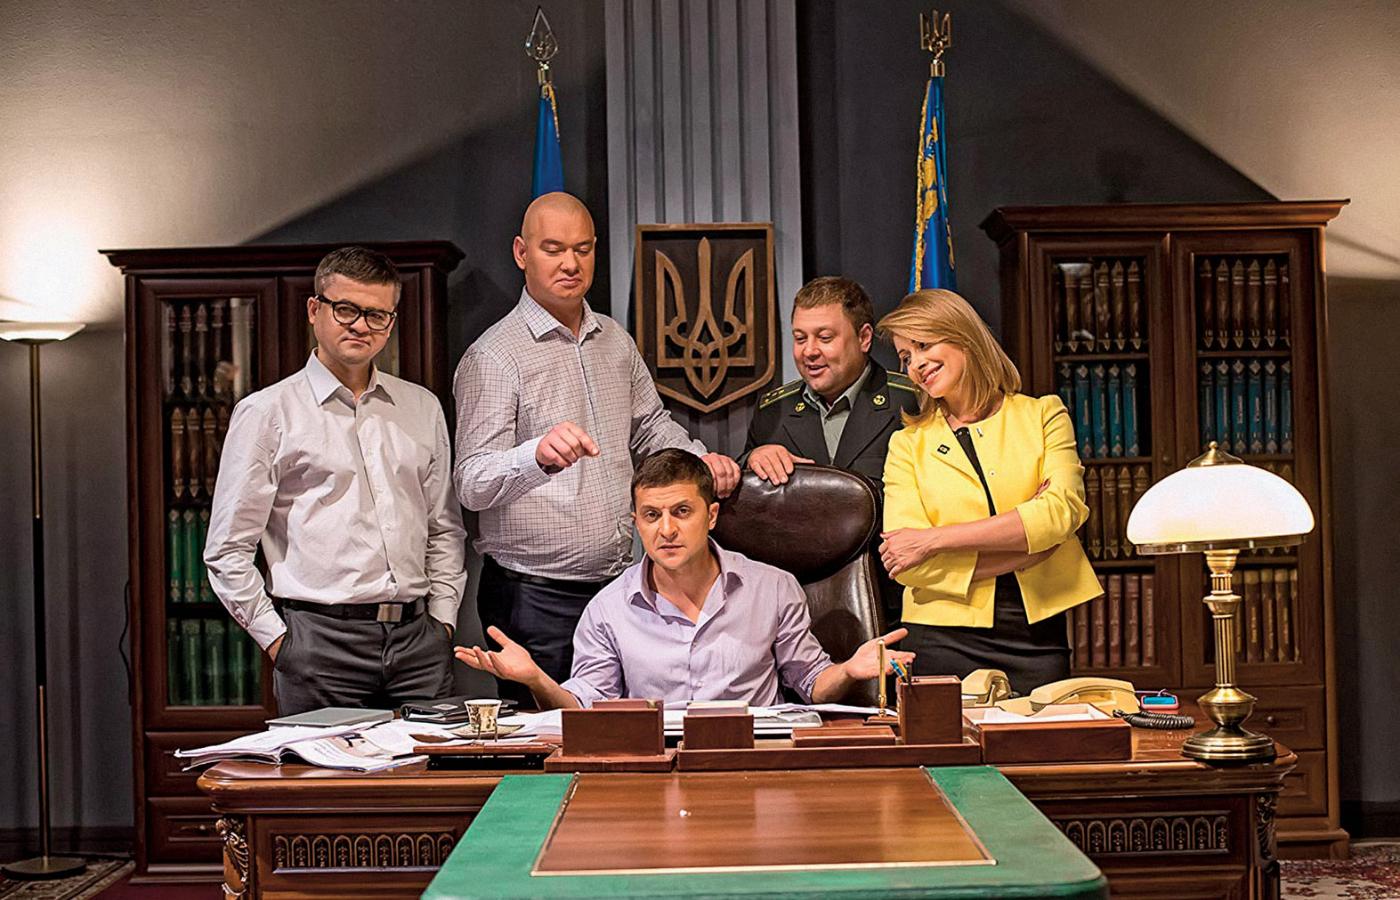 Kadr z serialu „Sługa narodu”, w którym Zełenski (w środku) gra prezydenta Ukrainy.